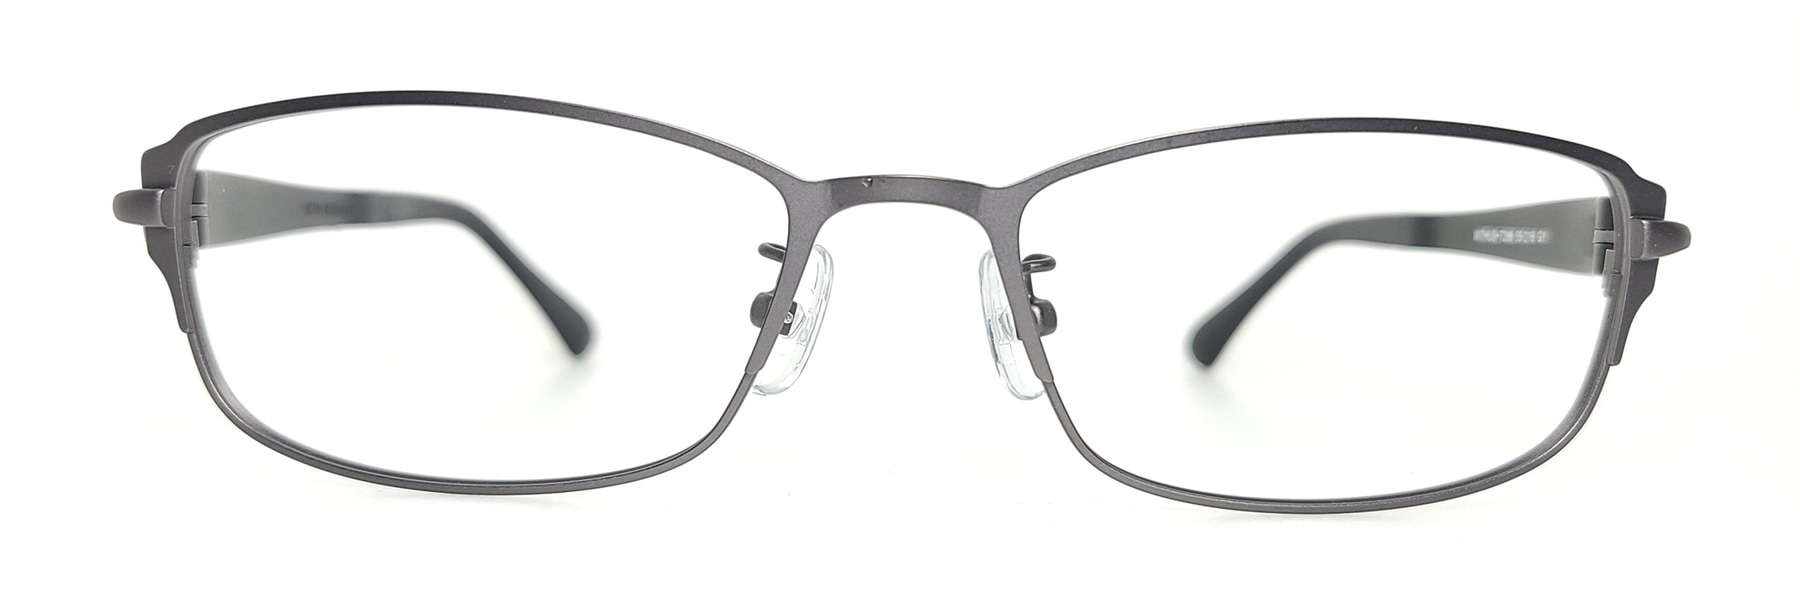 WITHUS-7286, Korean glasses, sunglasses, eyeglasses, glasses